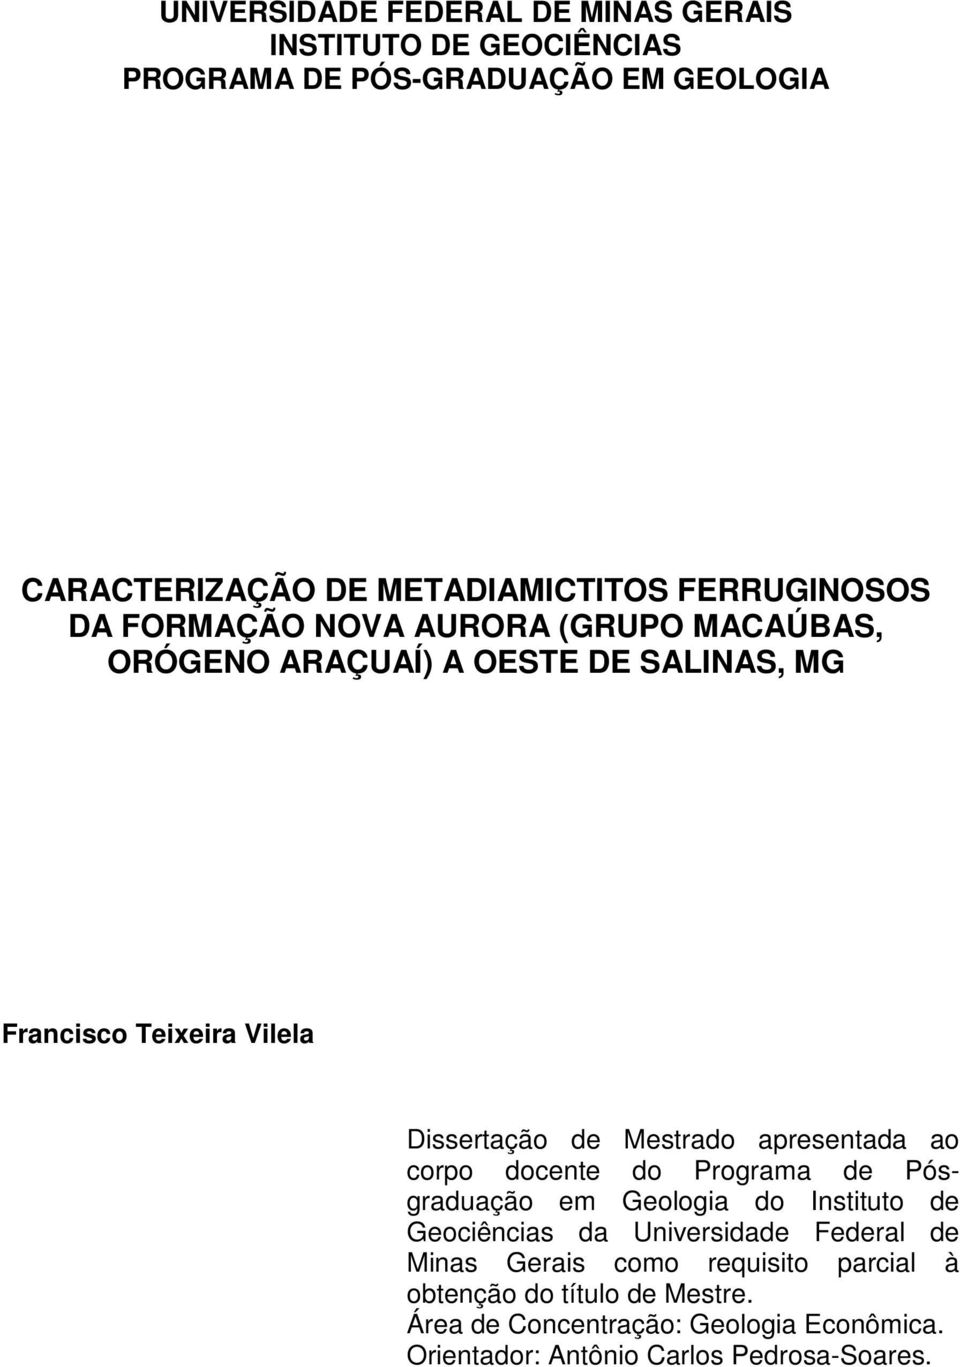 Mestrado apresentada ao corpo docente do Programa de Pósgraduação em Geologia do Instituto de Geociências da Universidade Federal de Minas